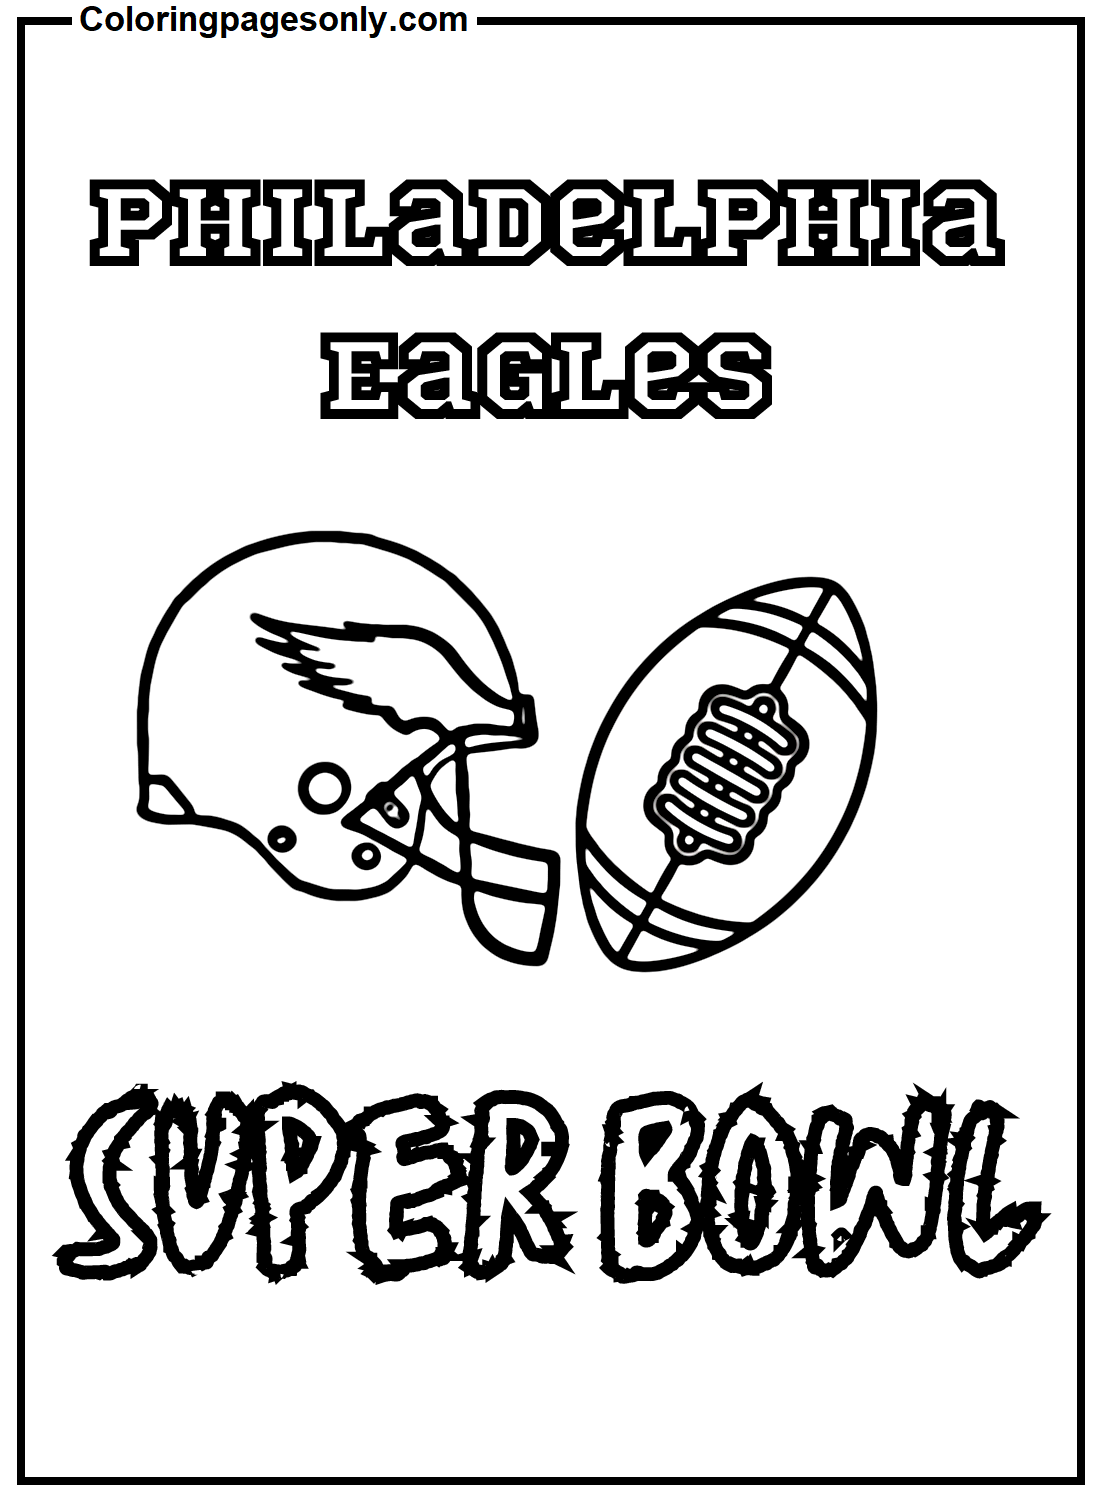 Immagine del Super Bowl dei Philadelphia Eagles dai Philadelphia Eagles